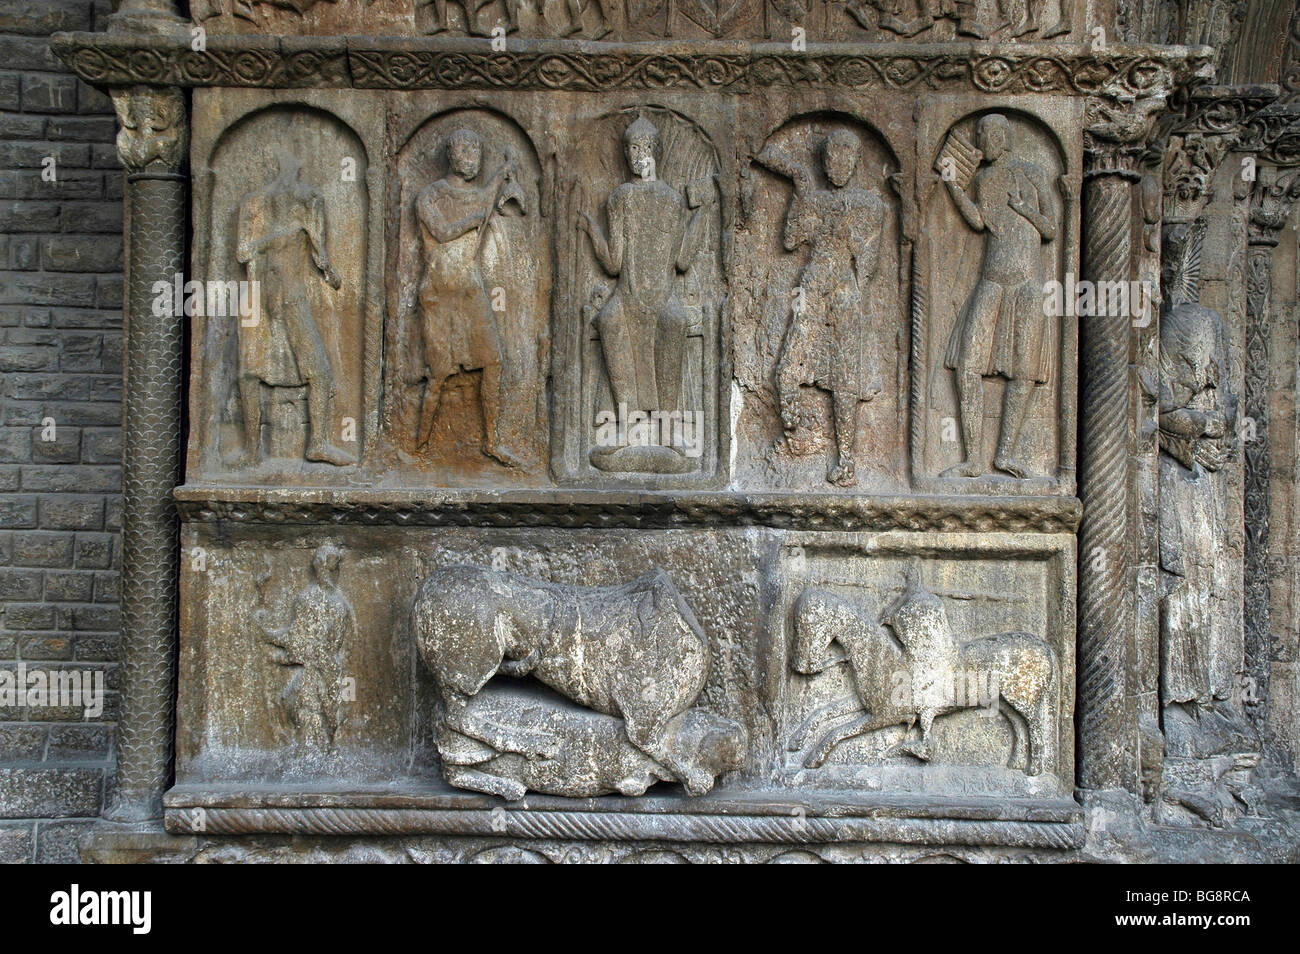 Monastère de Santa Maria de Ripoll. Portic sculpturale. Le roi David et quatre musiciens. La Catalogne. L'Espagne. Banque D'Images